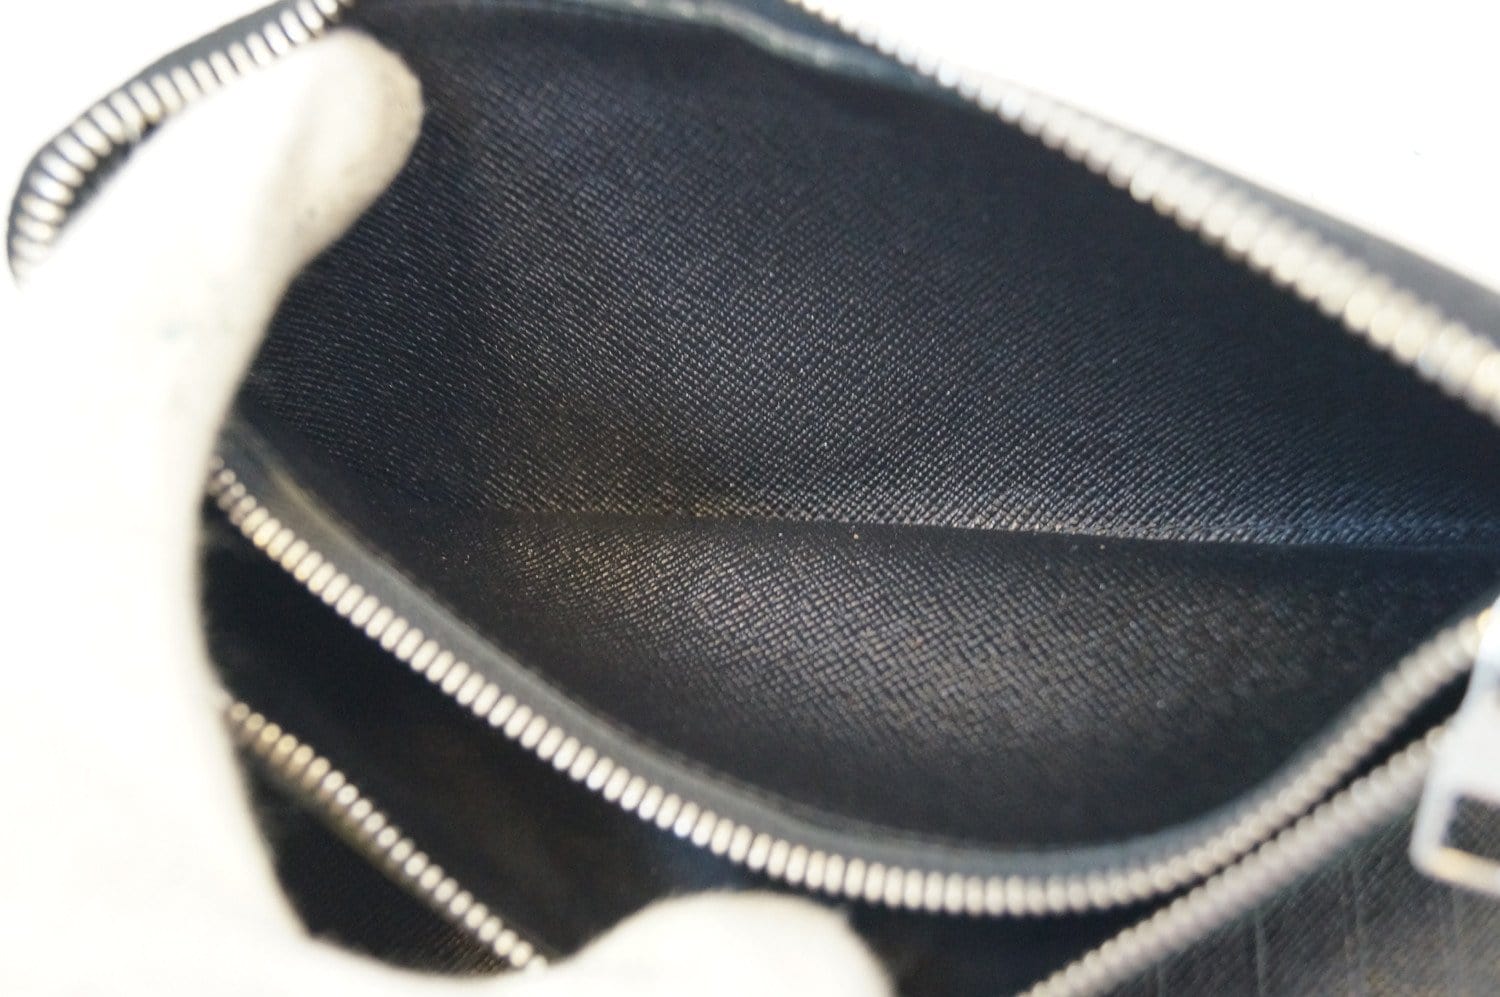 Louis Vuitton Vertical Zipper Wallet Men - Diamer Graphite